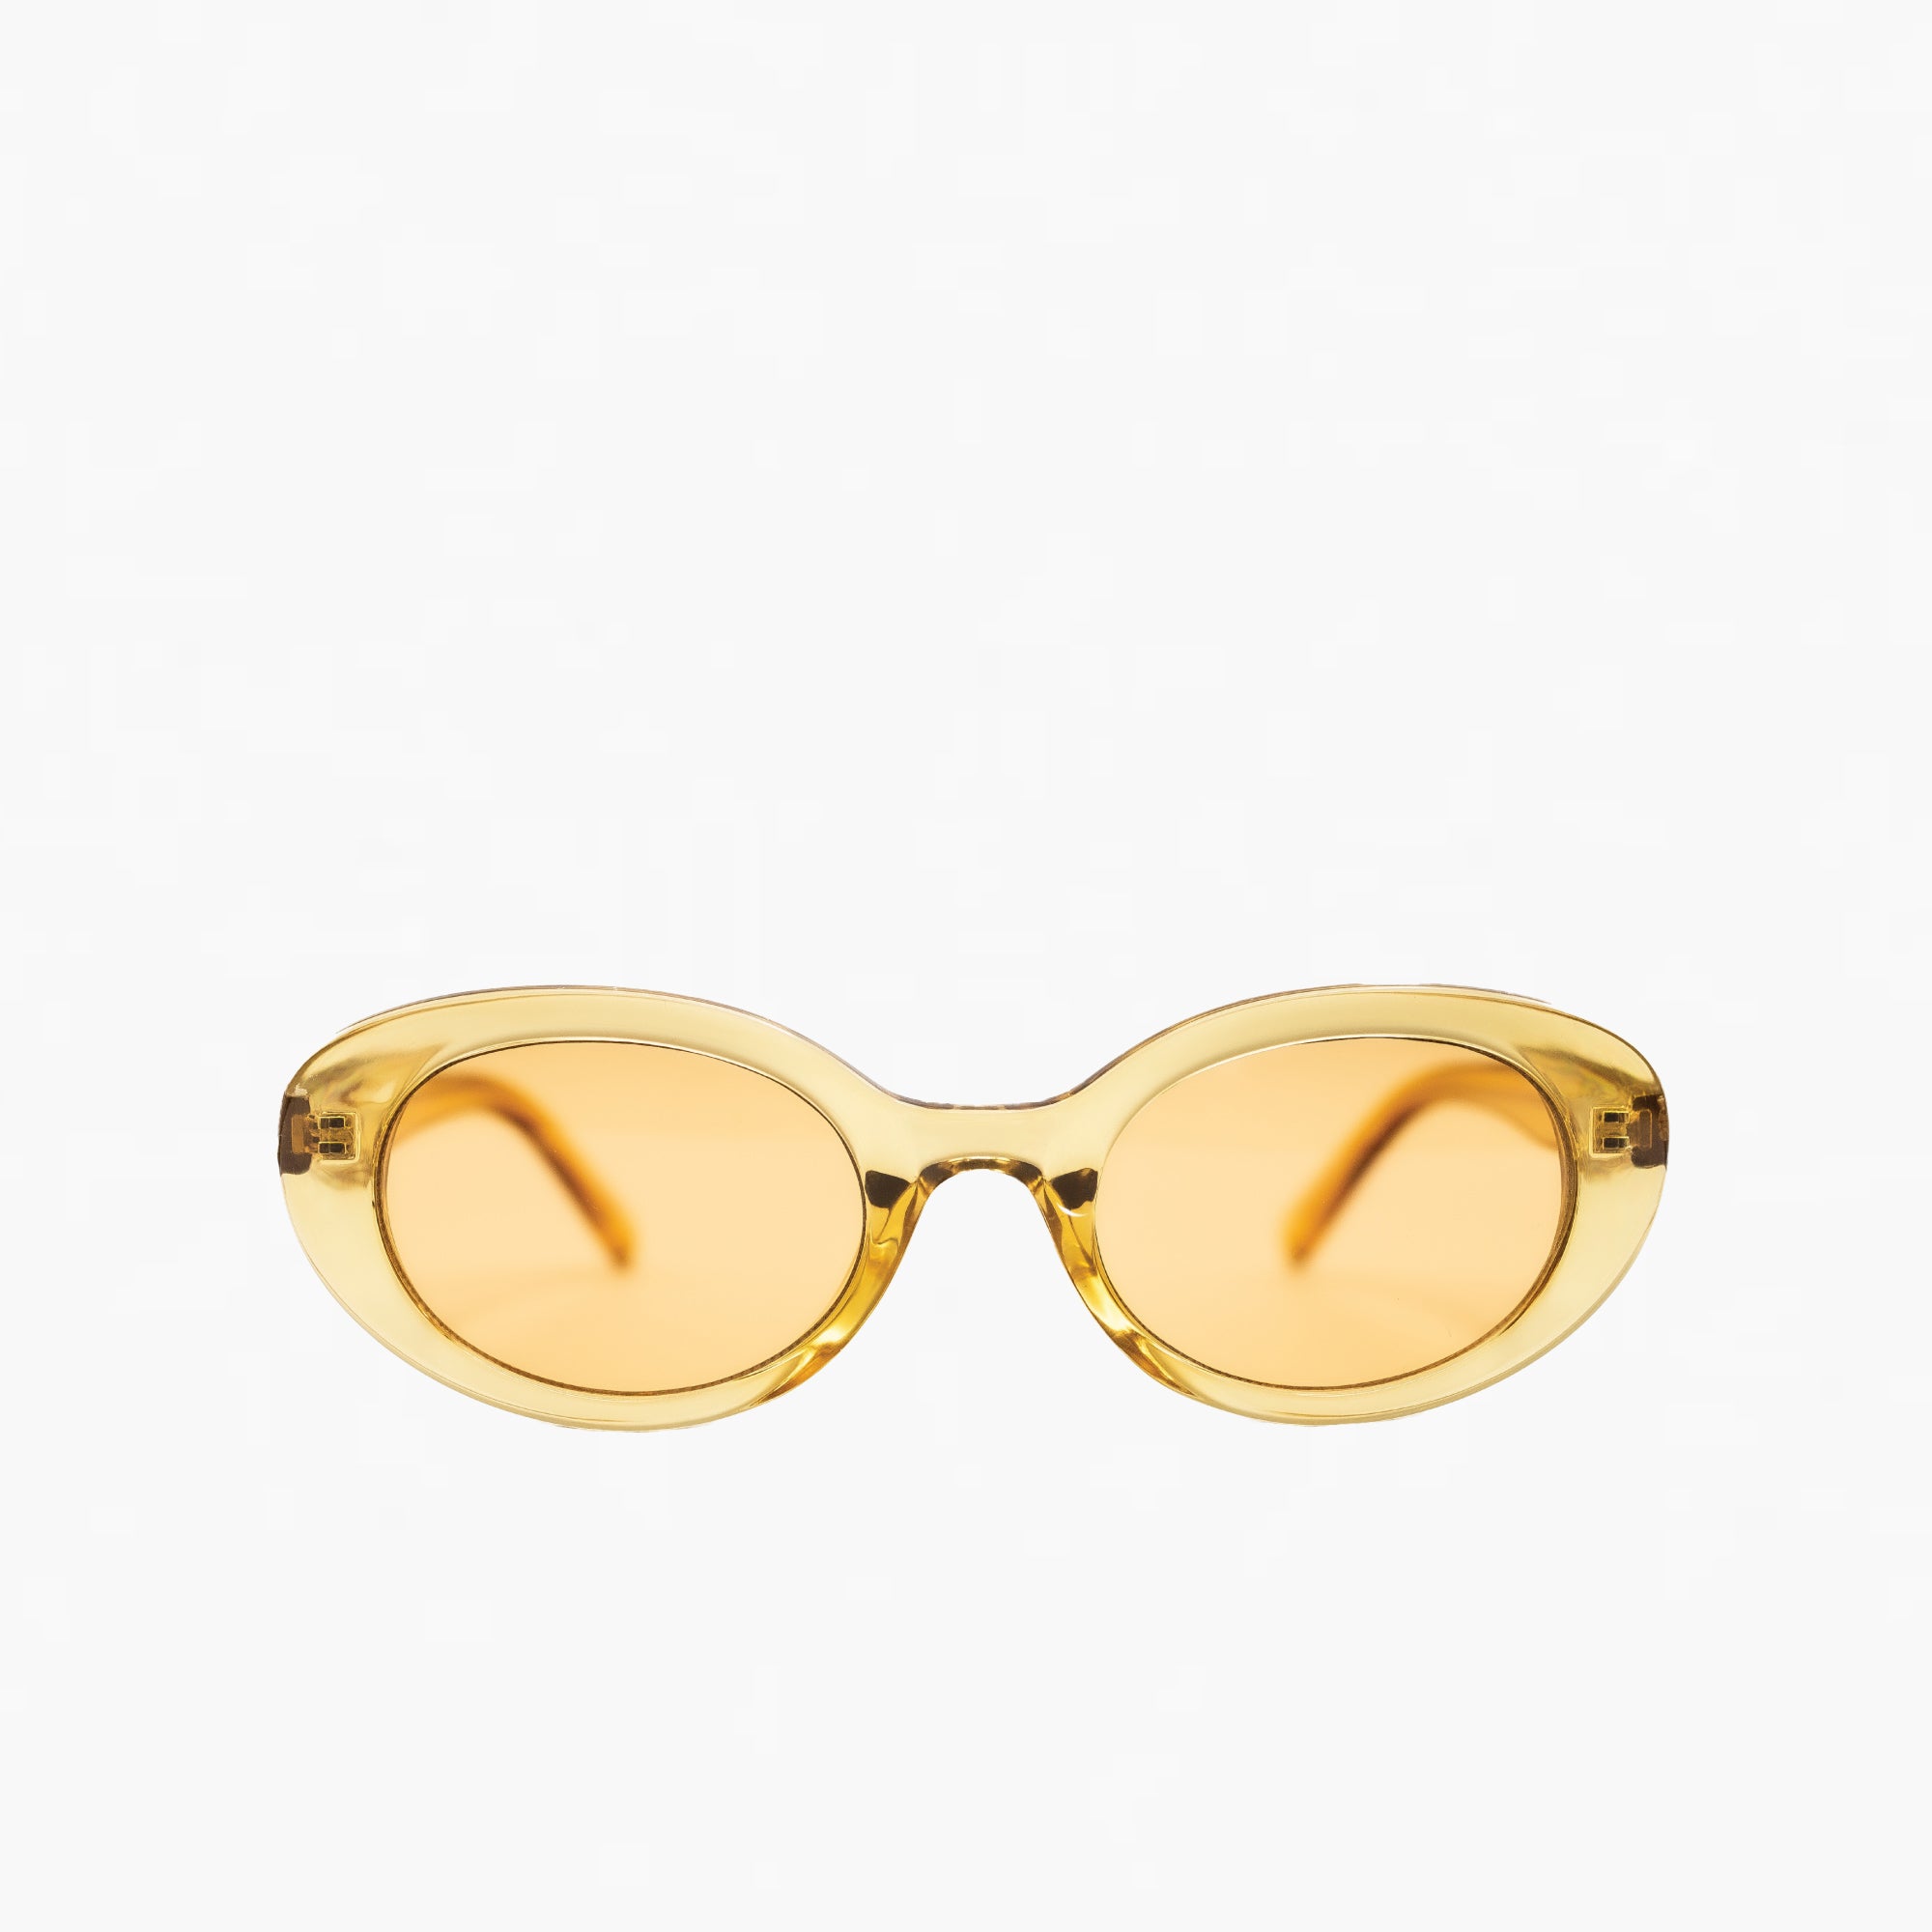 Yellow Tint Yellow Frame Round Eye Sunglasses